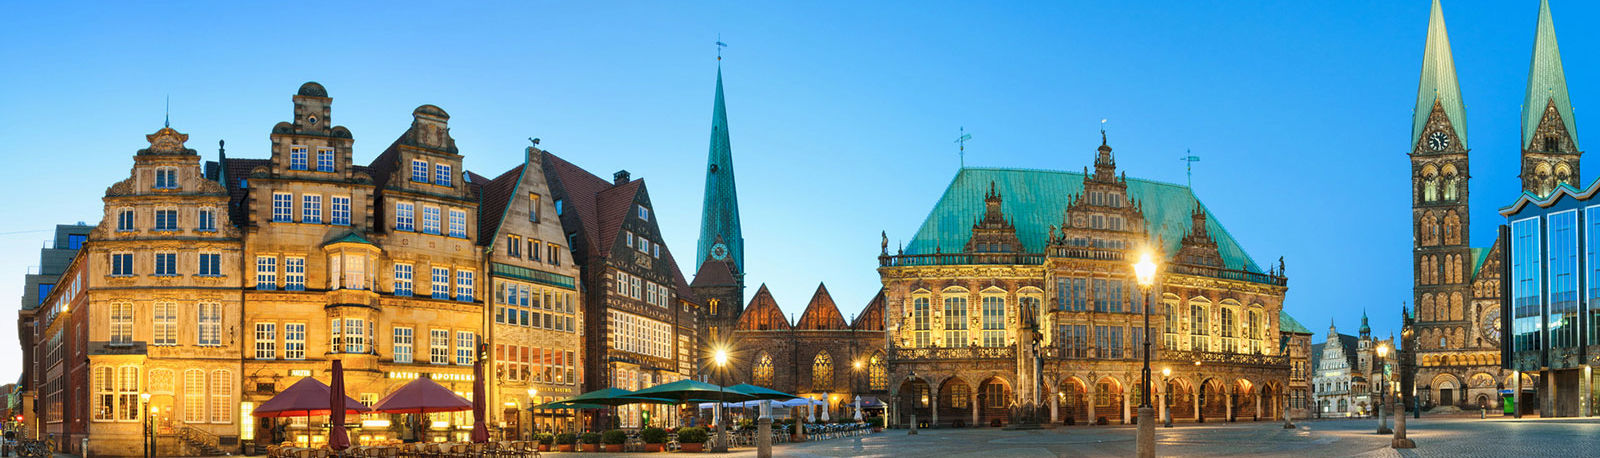 Altstadt in Bremen © Mapics, Fotolia